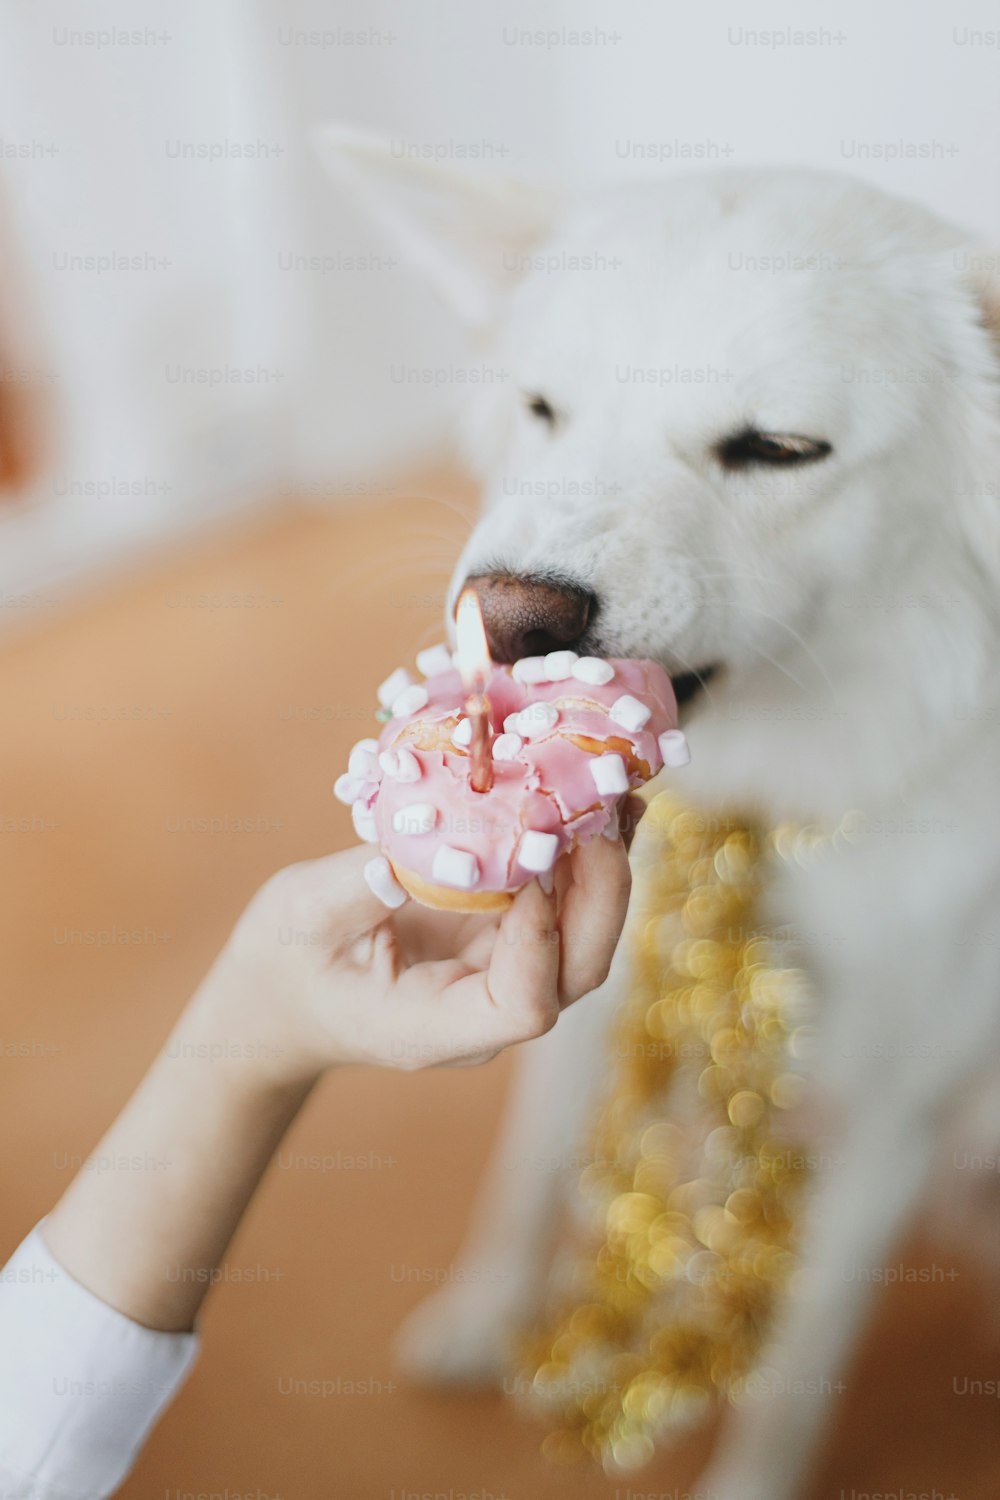 분홍색 화환과 장식의 배경에 촛불이 있는 생일 도넛을 물어뜯는 귀여운 개. 사랑스러운 흰색 스위스 양치기 개 첫 번째 생일을 축하합니다. 개 생일 파티